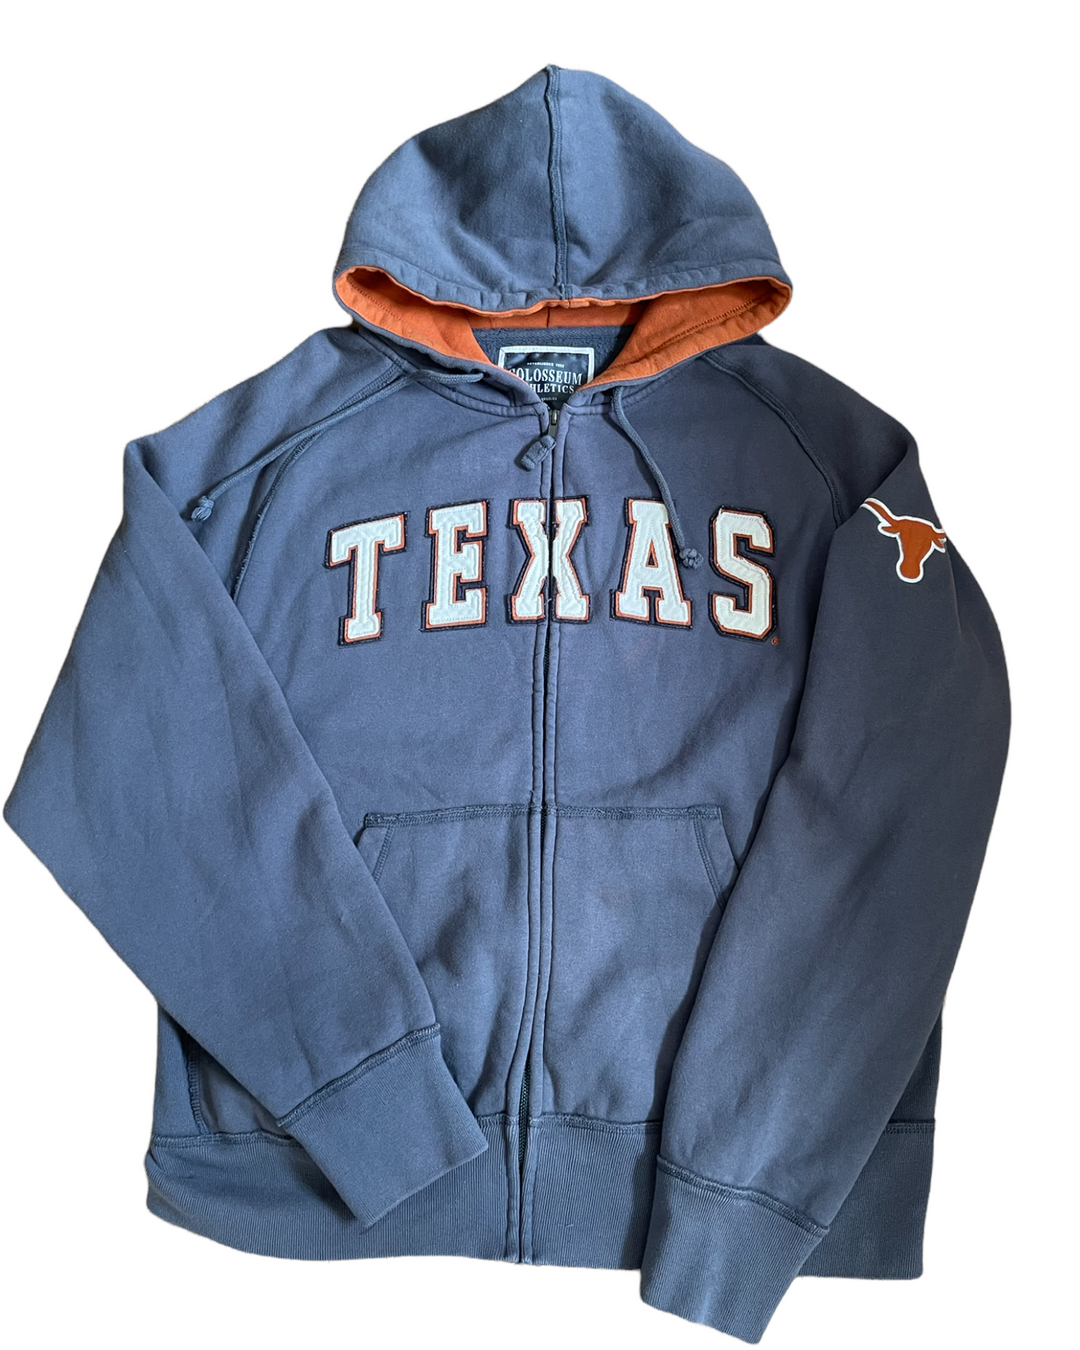 Texas Vintage Zip Up Sweatshirt